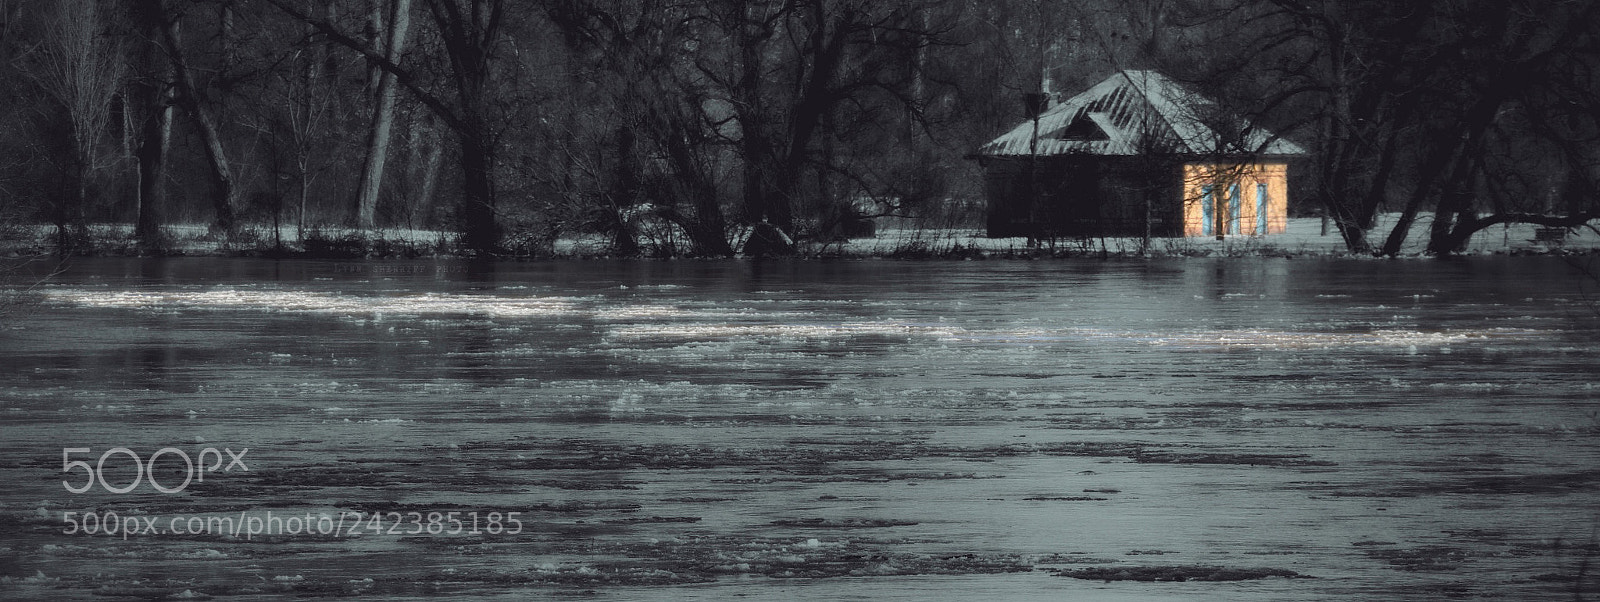 Canon EOS 70D sample photo. Winter river photography